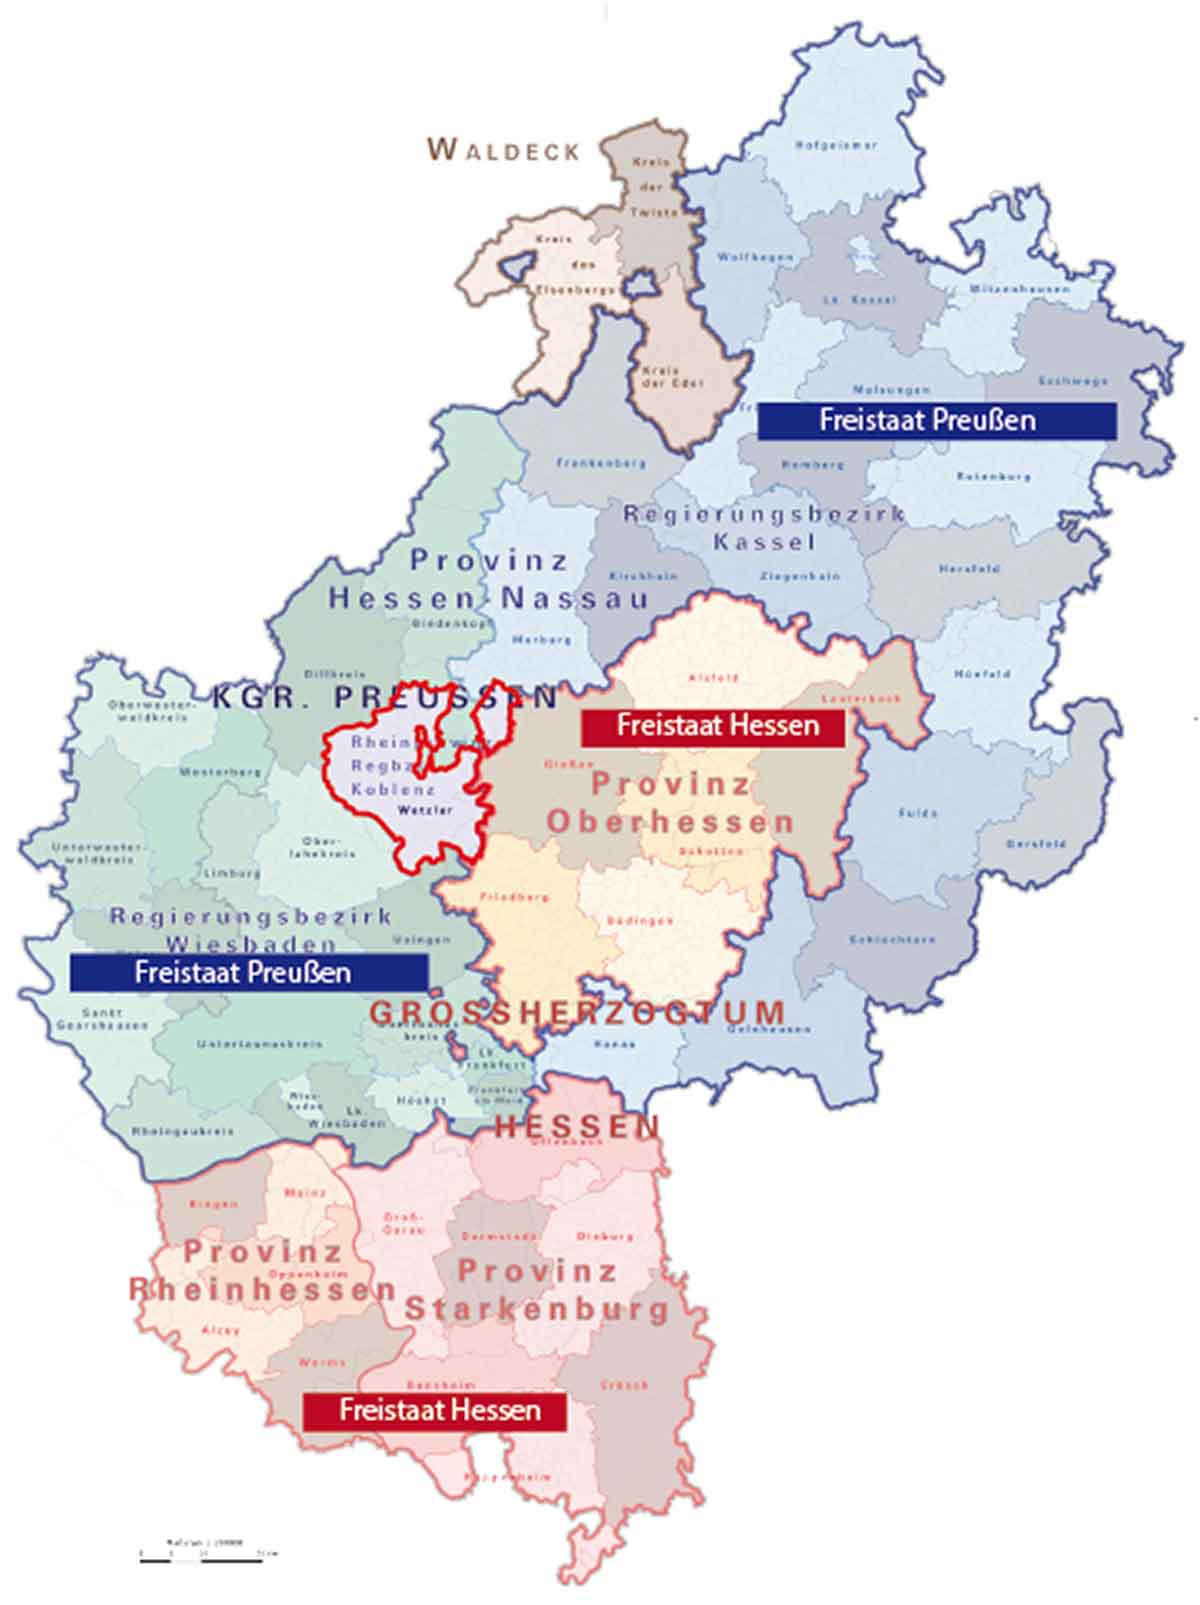 Karten mit den Hessischen Staaten in den Grenzen von 1928. Rot markiert der Landkreis Wetzlar, Exklave der Preußischen Rheinprovinz.